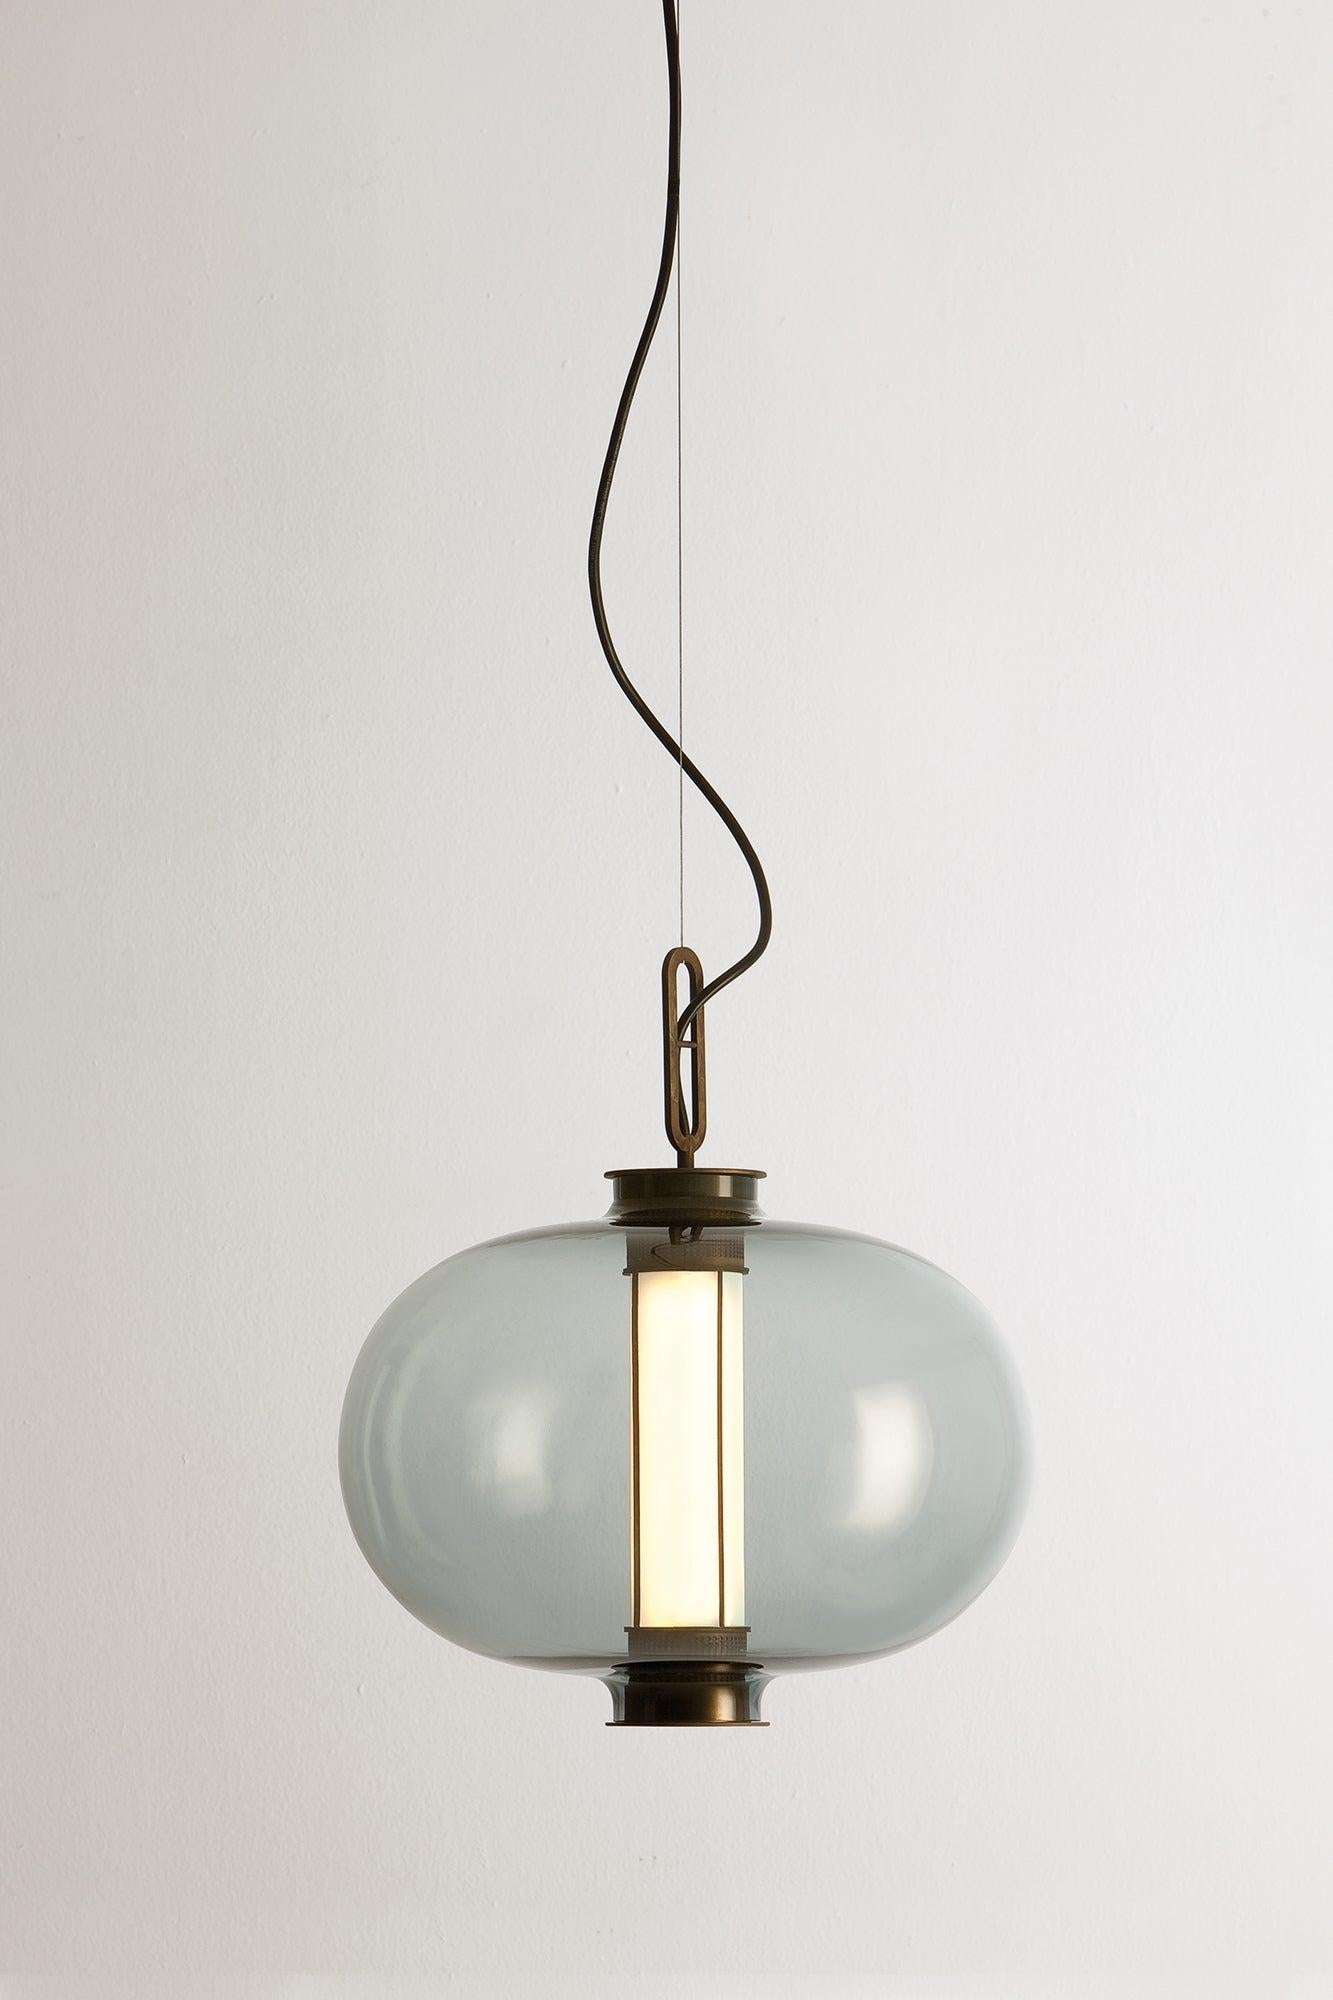 BAI T MA MA 

Lampe à suspension, modèle BAI T MA MA, conçue par Neri&HU en 2014. 
Fabriqué par Parachilna. 

Cette collection s'inspire des lanternes traditionnelles chinoises. Cette version est cependant sophistiquée. Composé d'une structure